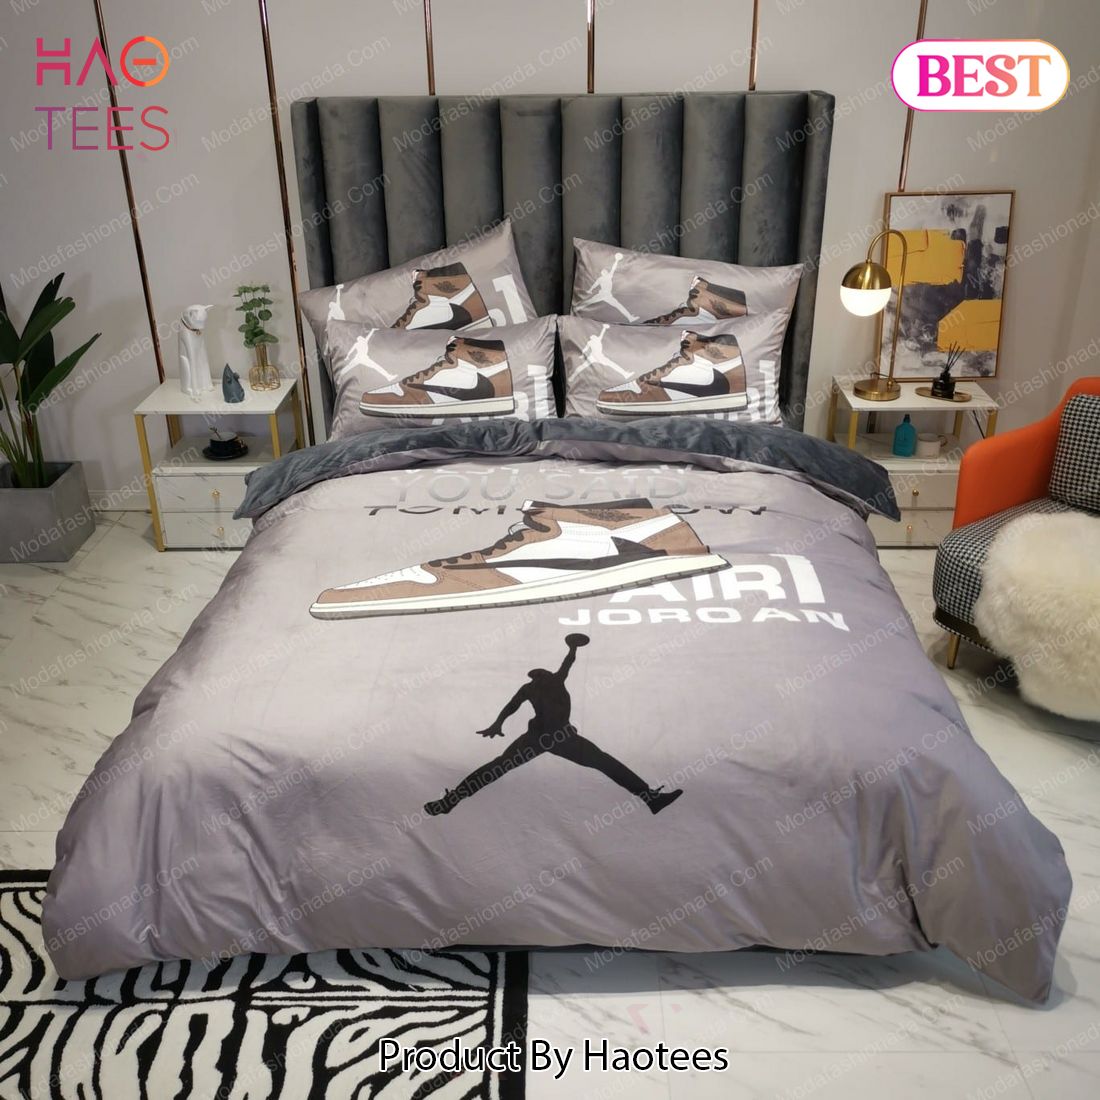 Buy Nike Air Jordan Supreme Brands 2 Bedding Set Bed sets with